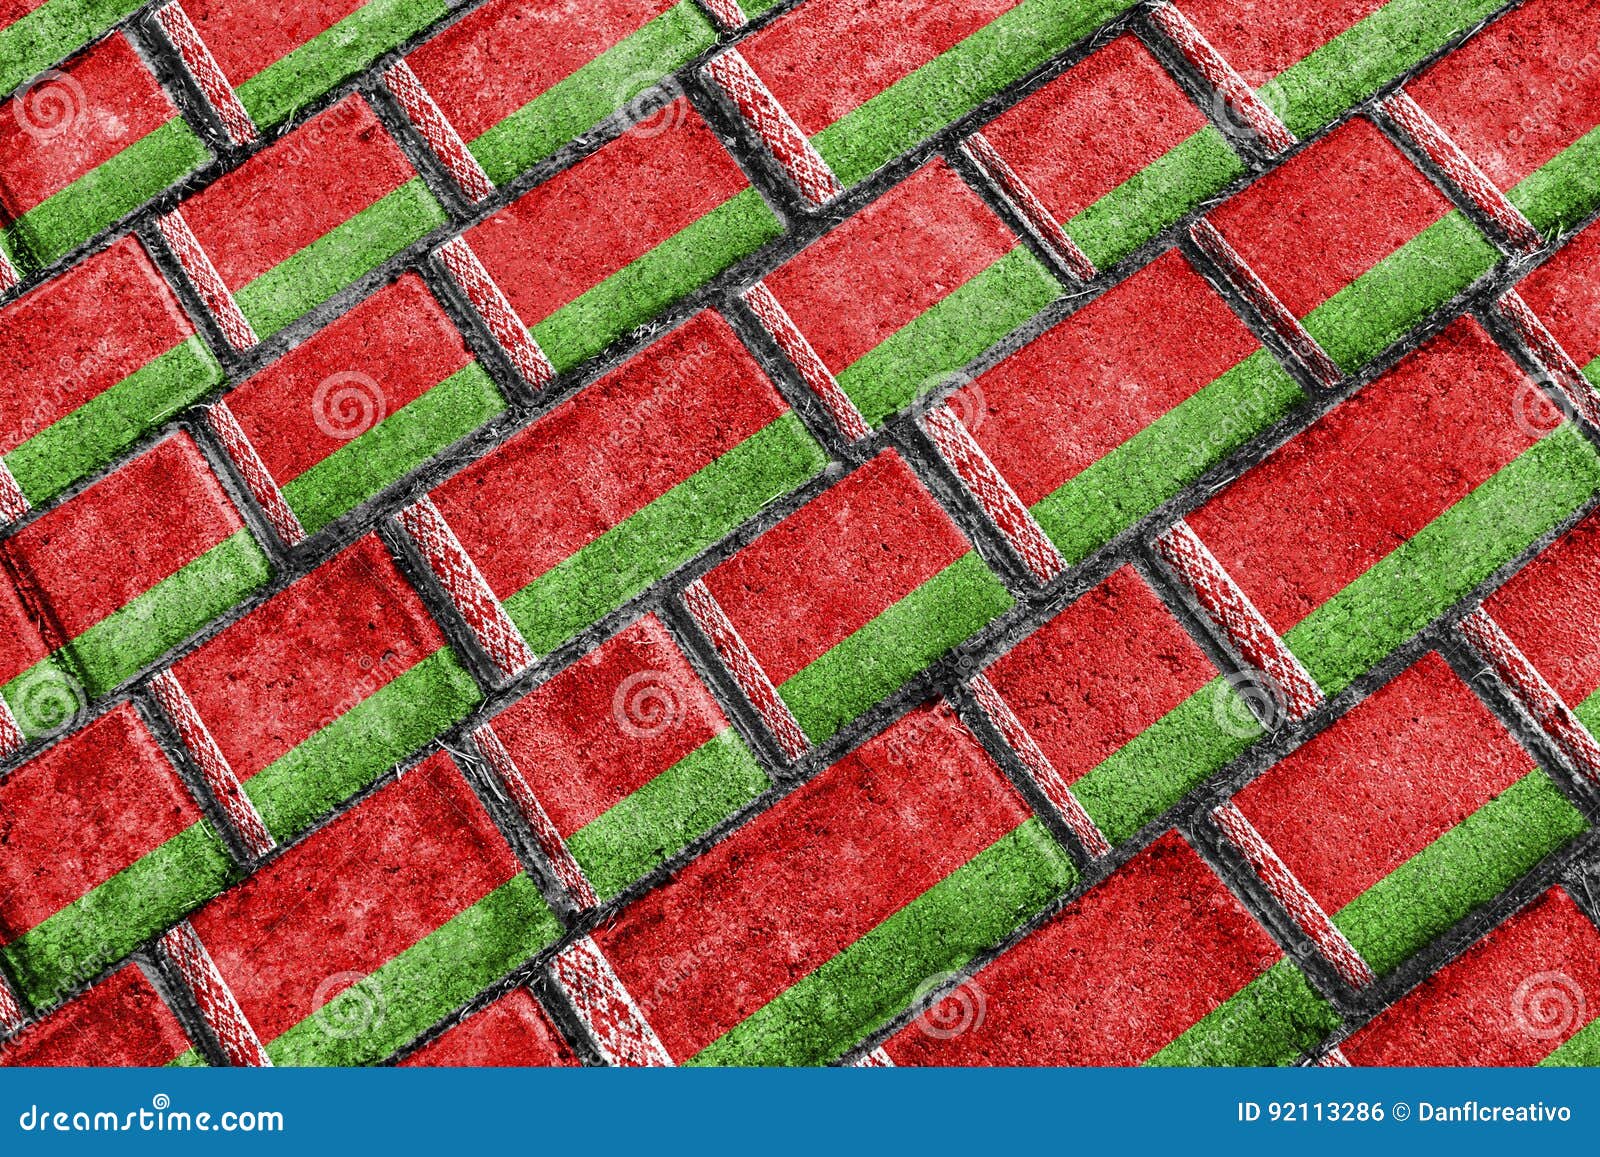 bielorrusia flag urban grunge pattern